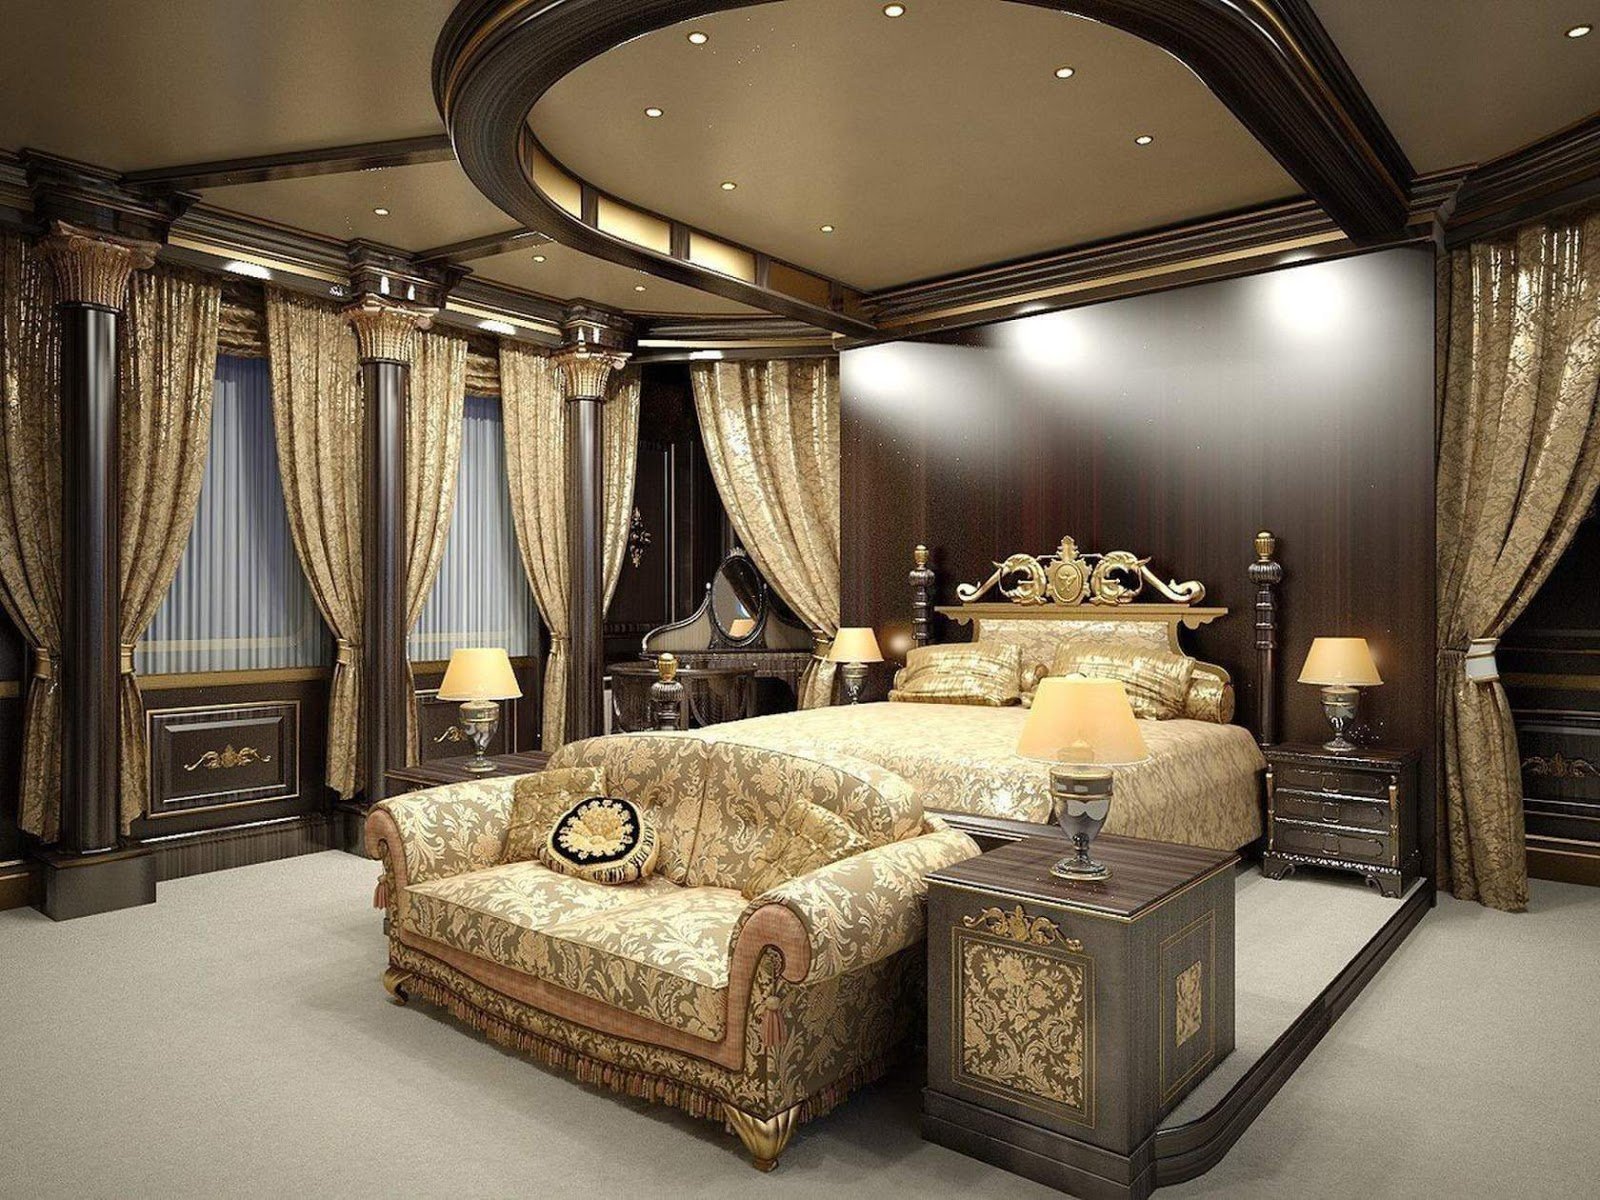 Luxury тг. Спальня в стиле Ампир роскошная. Стиль Ампир в интерьере. Роскошные интерьеры особняков в стиле Ампир. Стиль Ампир в интерьере спальни.